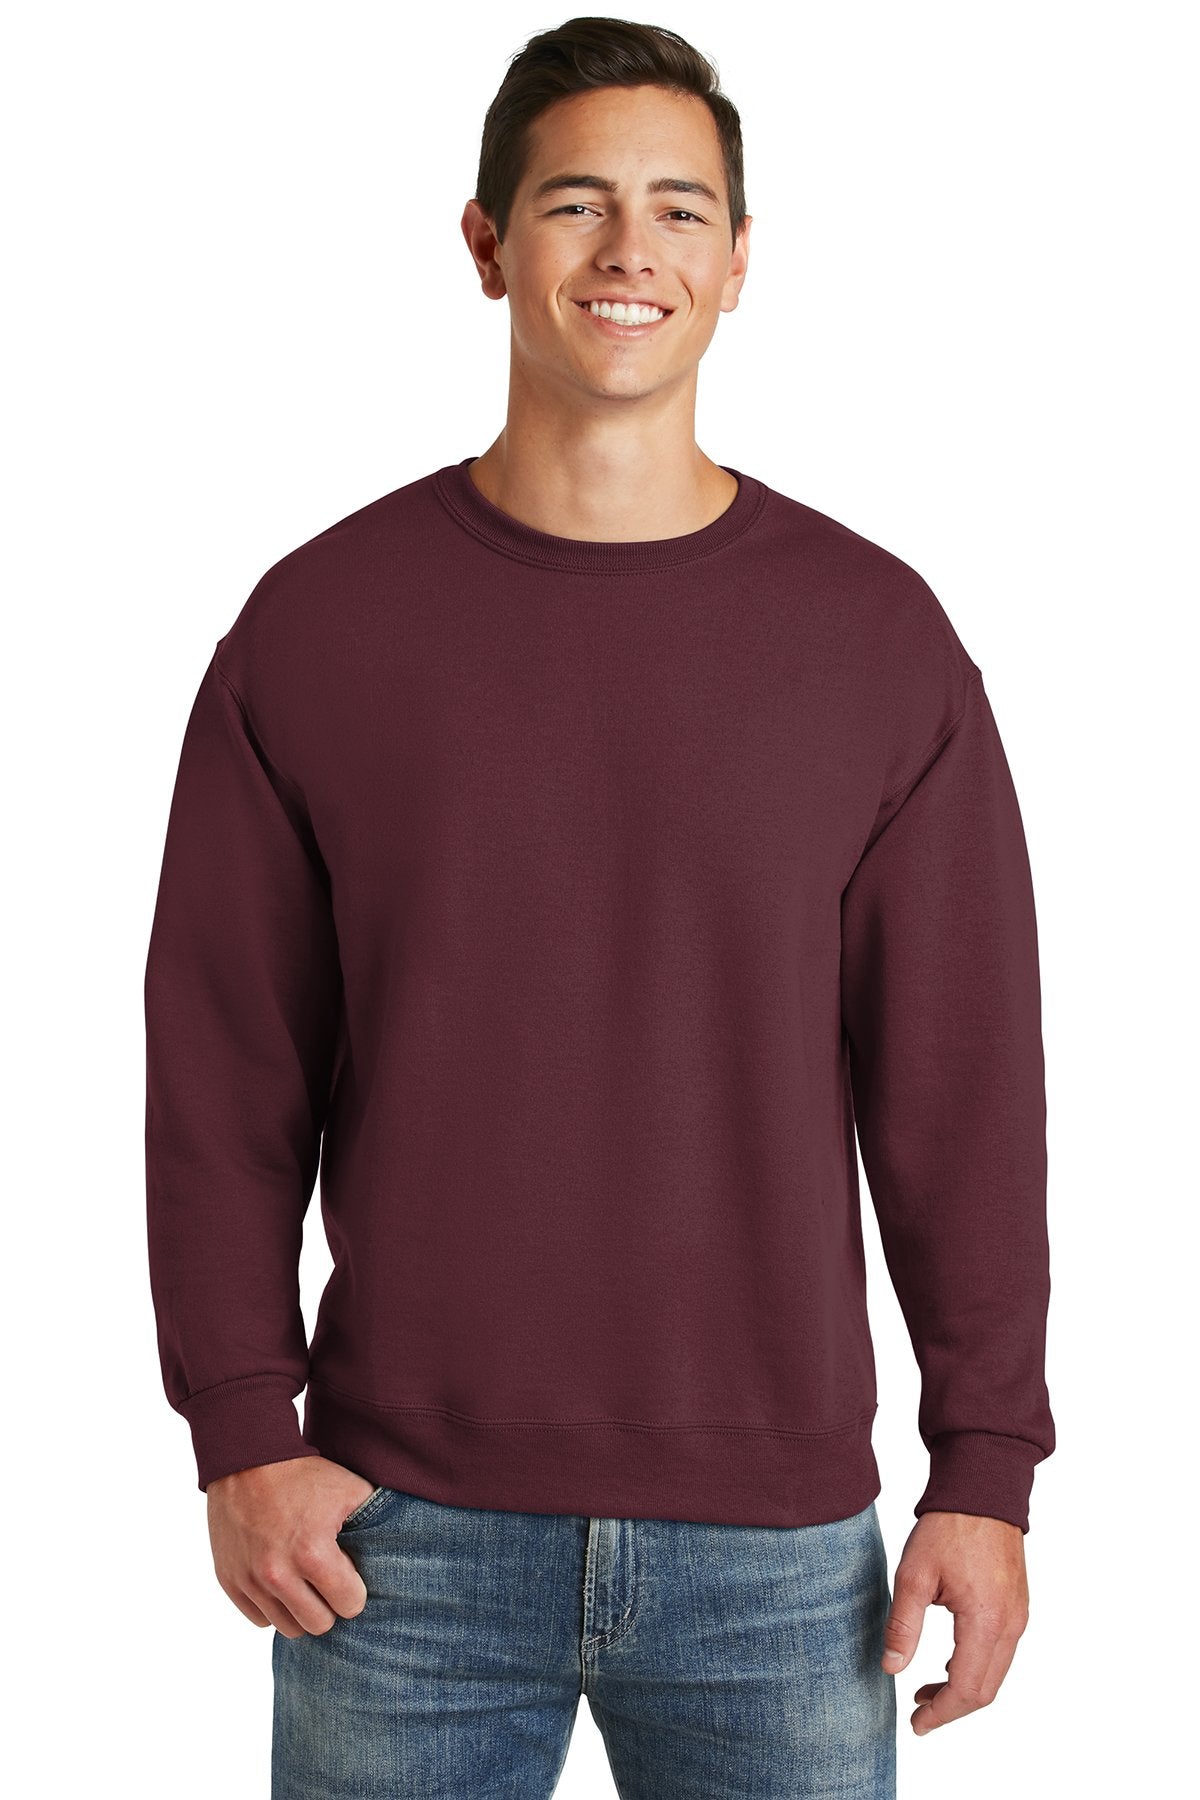 Jerzees Maroon 4662M custom embroidered sweatshirts